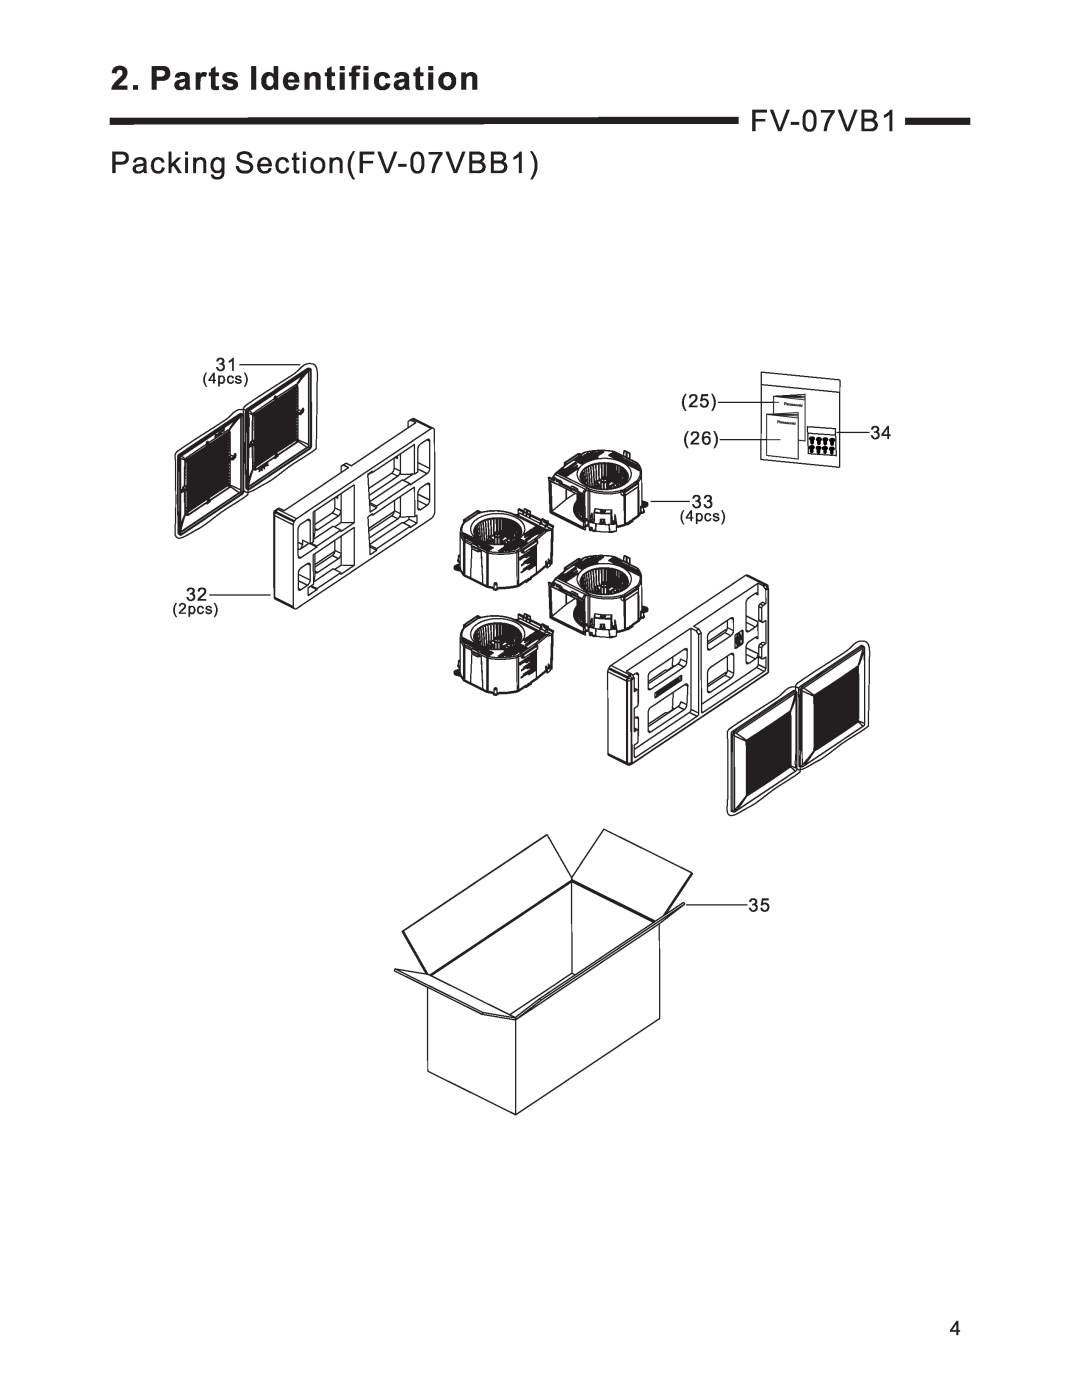 Panasonic service manual FV-07VB1 Packing SectionFV-07VBB1, Parts Identification, 4pcs, 2pcs 